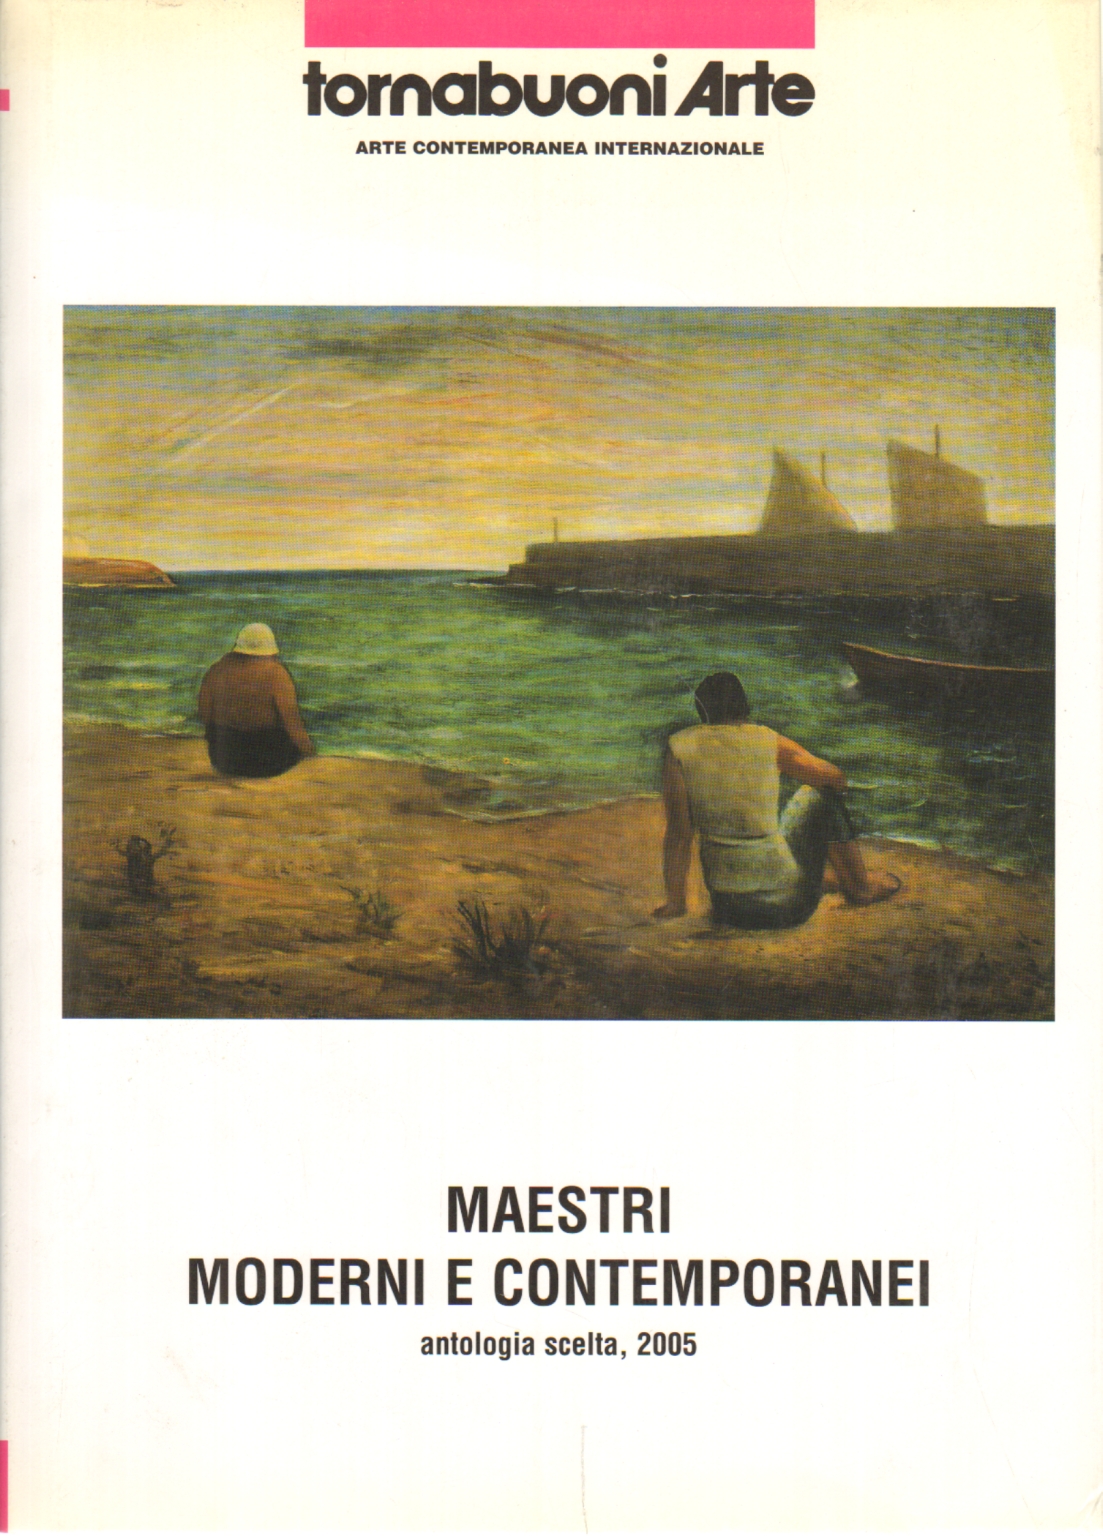 Maestri moderni e contemporanei, s.a.